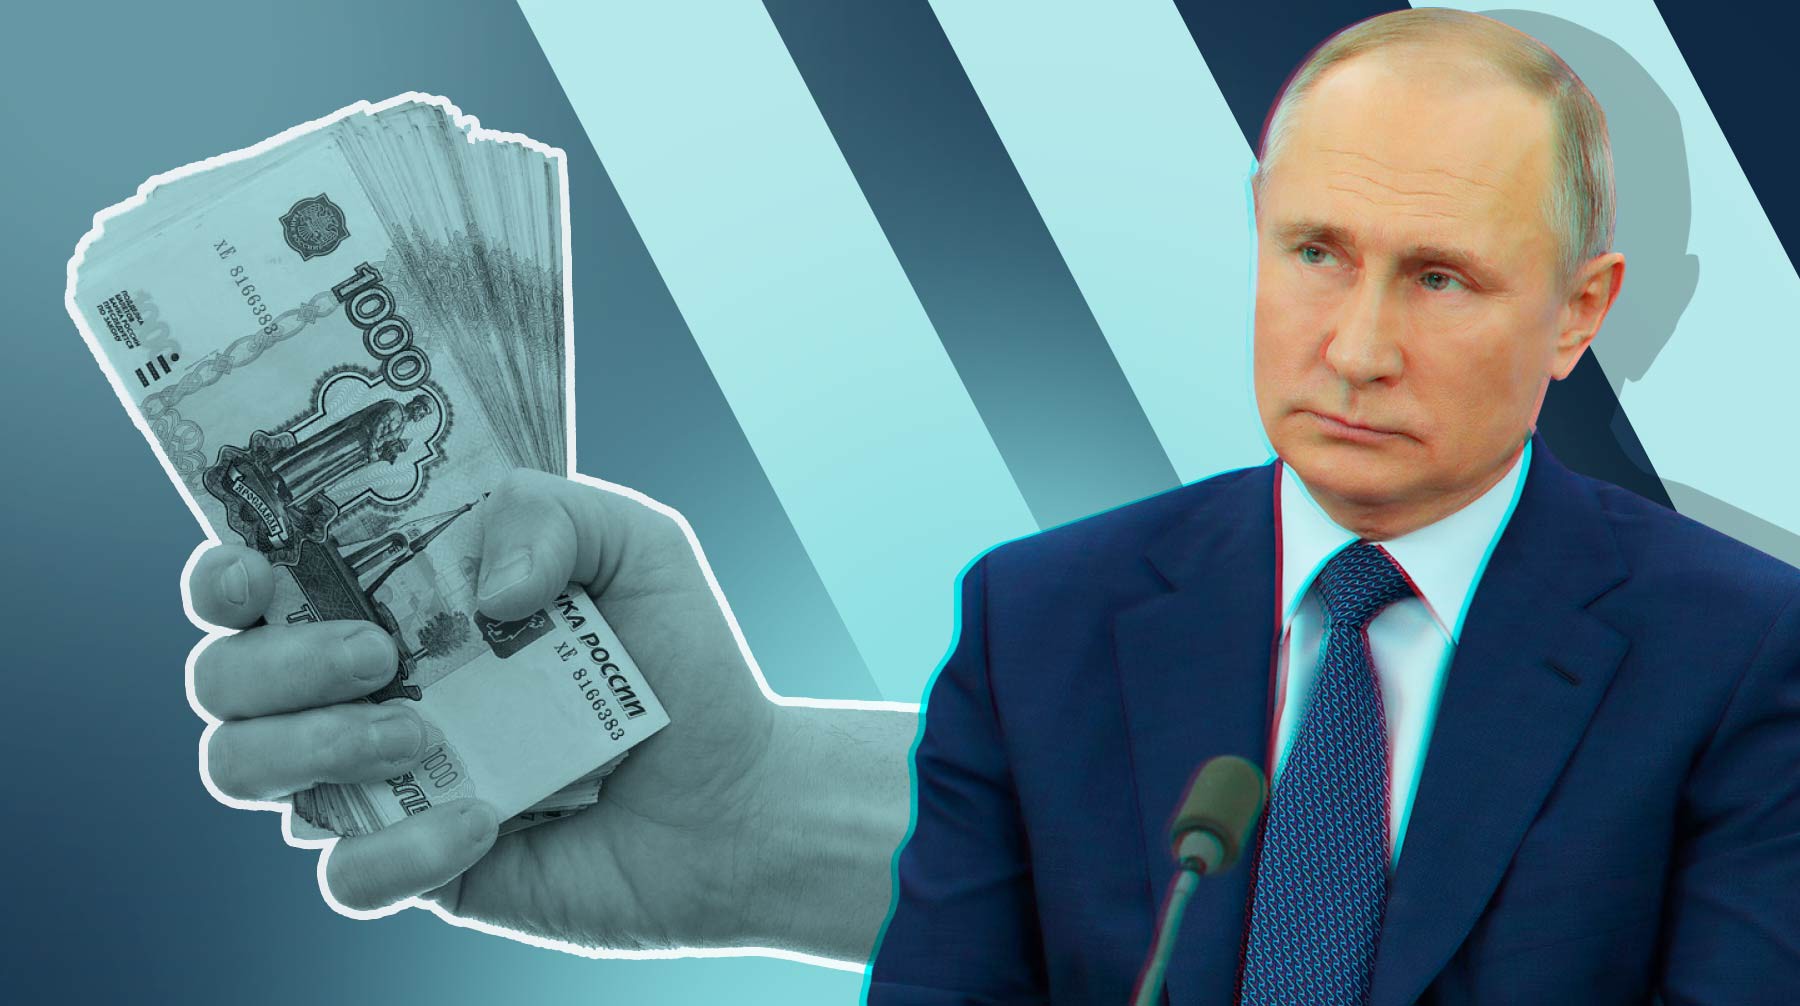 Dailystorm - В Башкирии за полчаса разобрались с вопросом женщины Путину о выплатах на детей